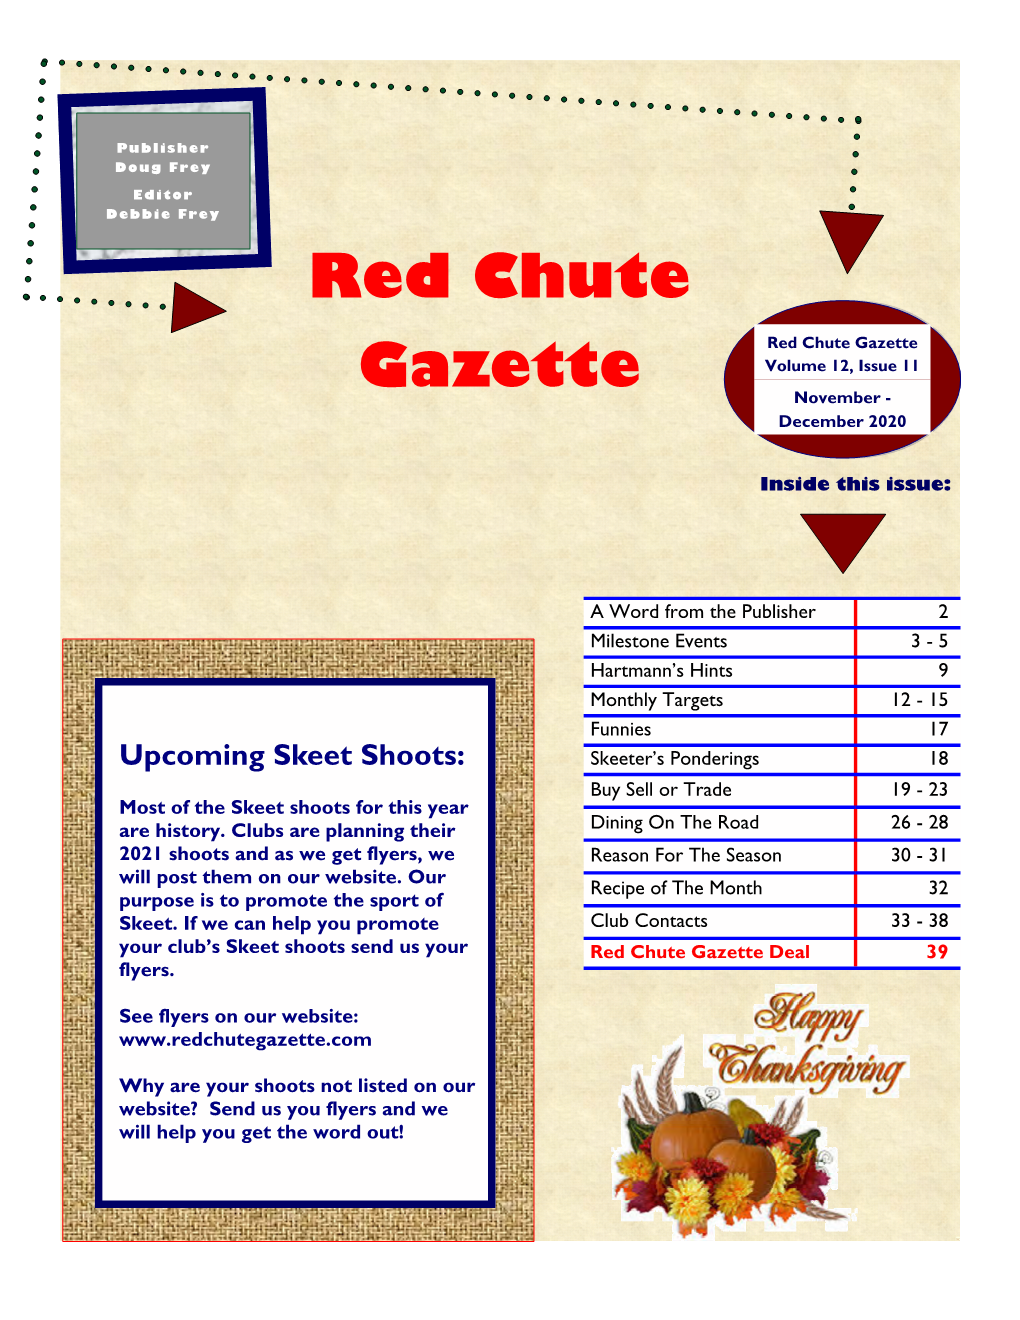 Red Chute Gazette Deal 39 Flyers